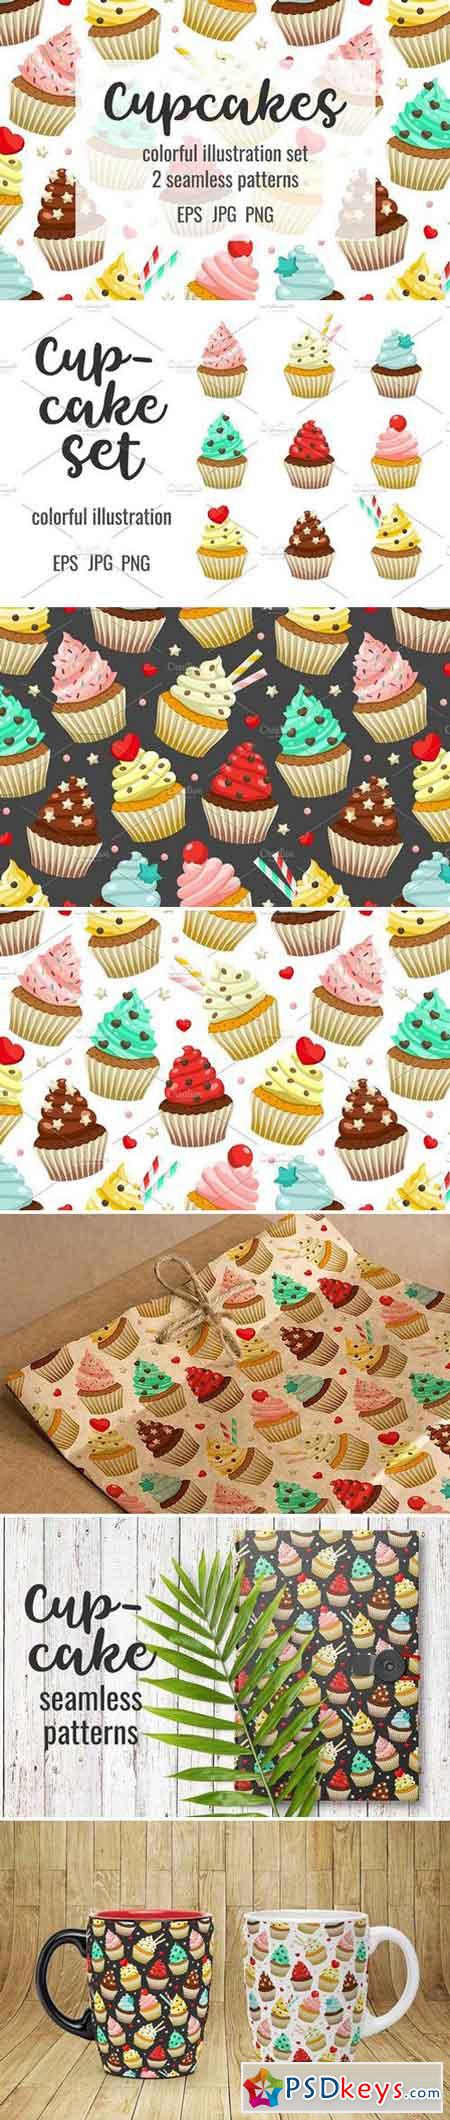 Cupcakes set & patterns 1957018